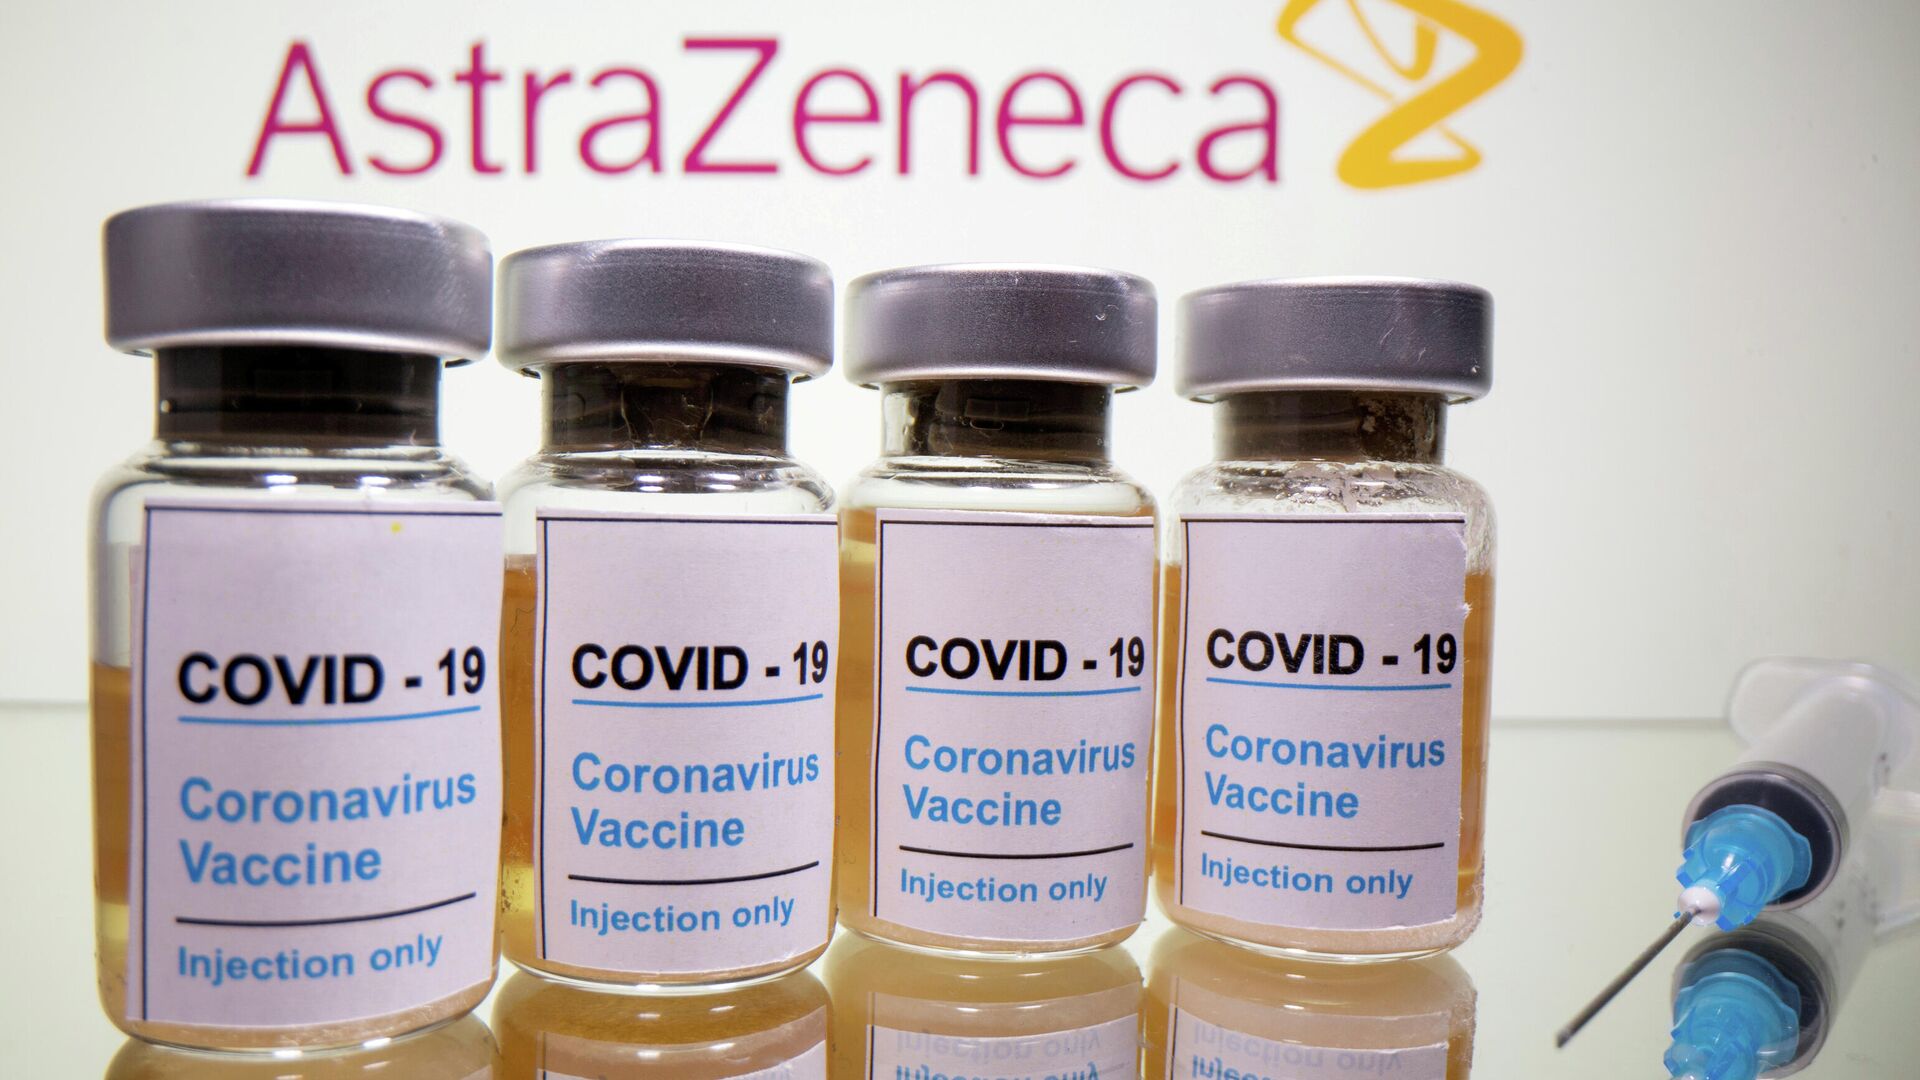 Dosis de la vacuna contra el COVID-19 de AstraZeneca - Sputnik Mundo, 1920, 12.03.2021